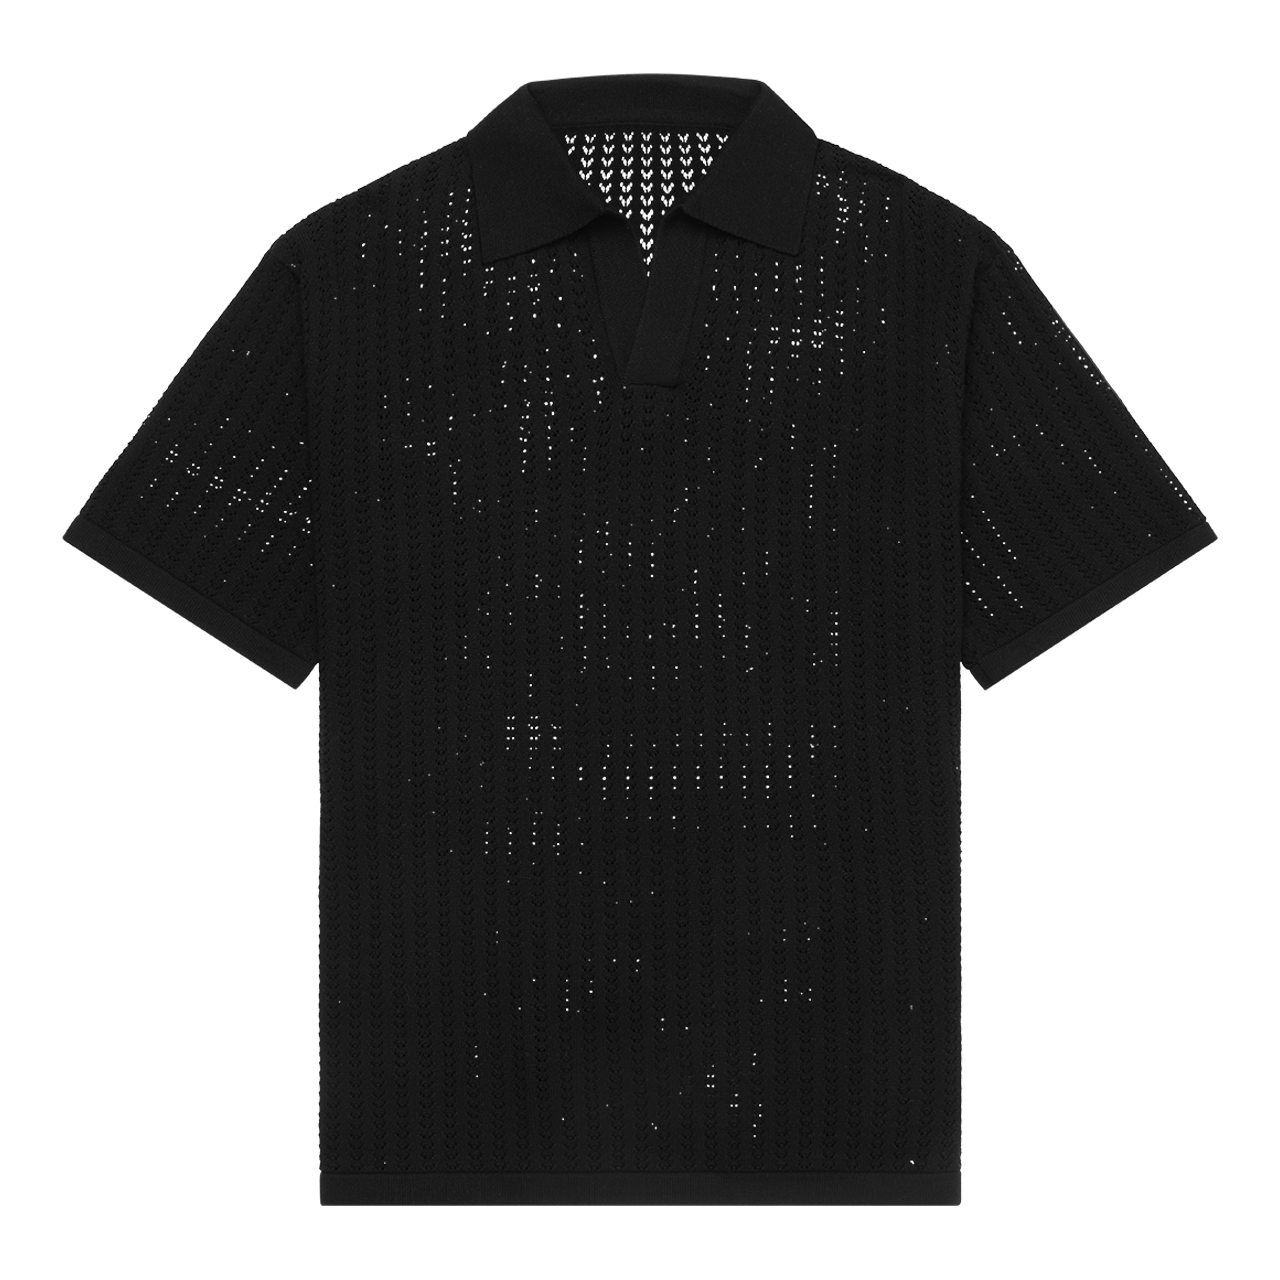 Copacetic Polo Knit Black